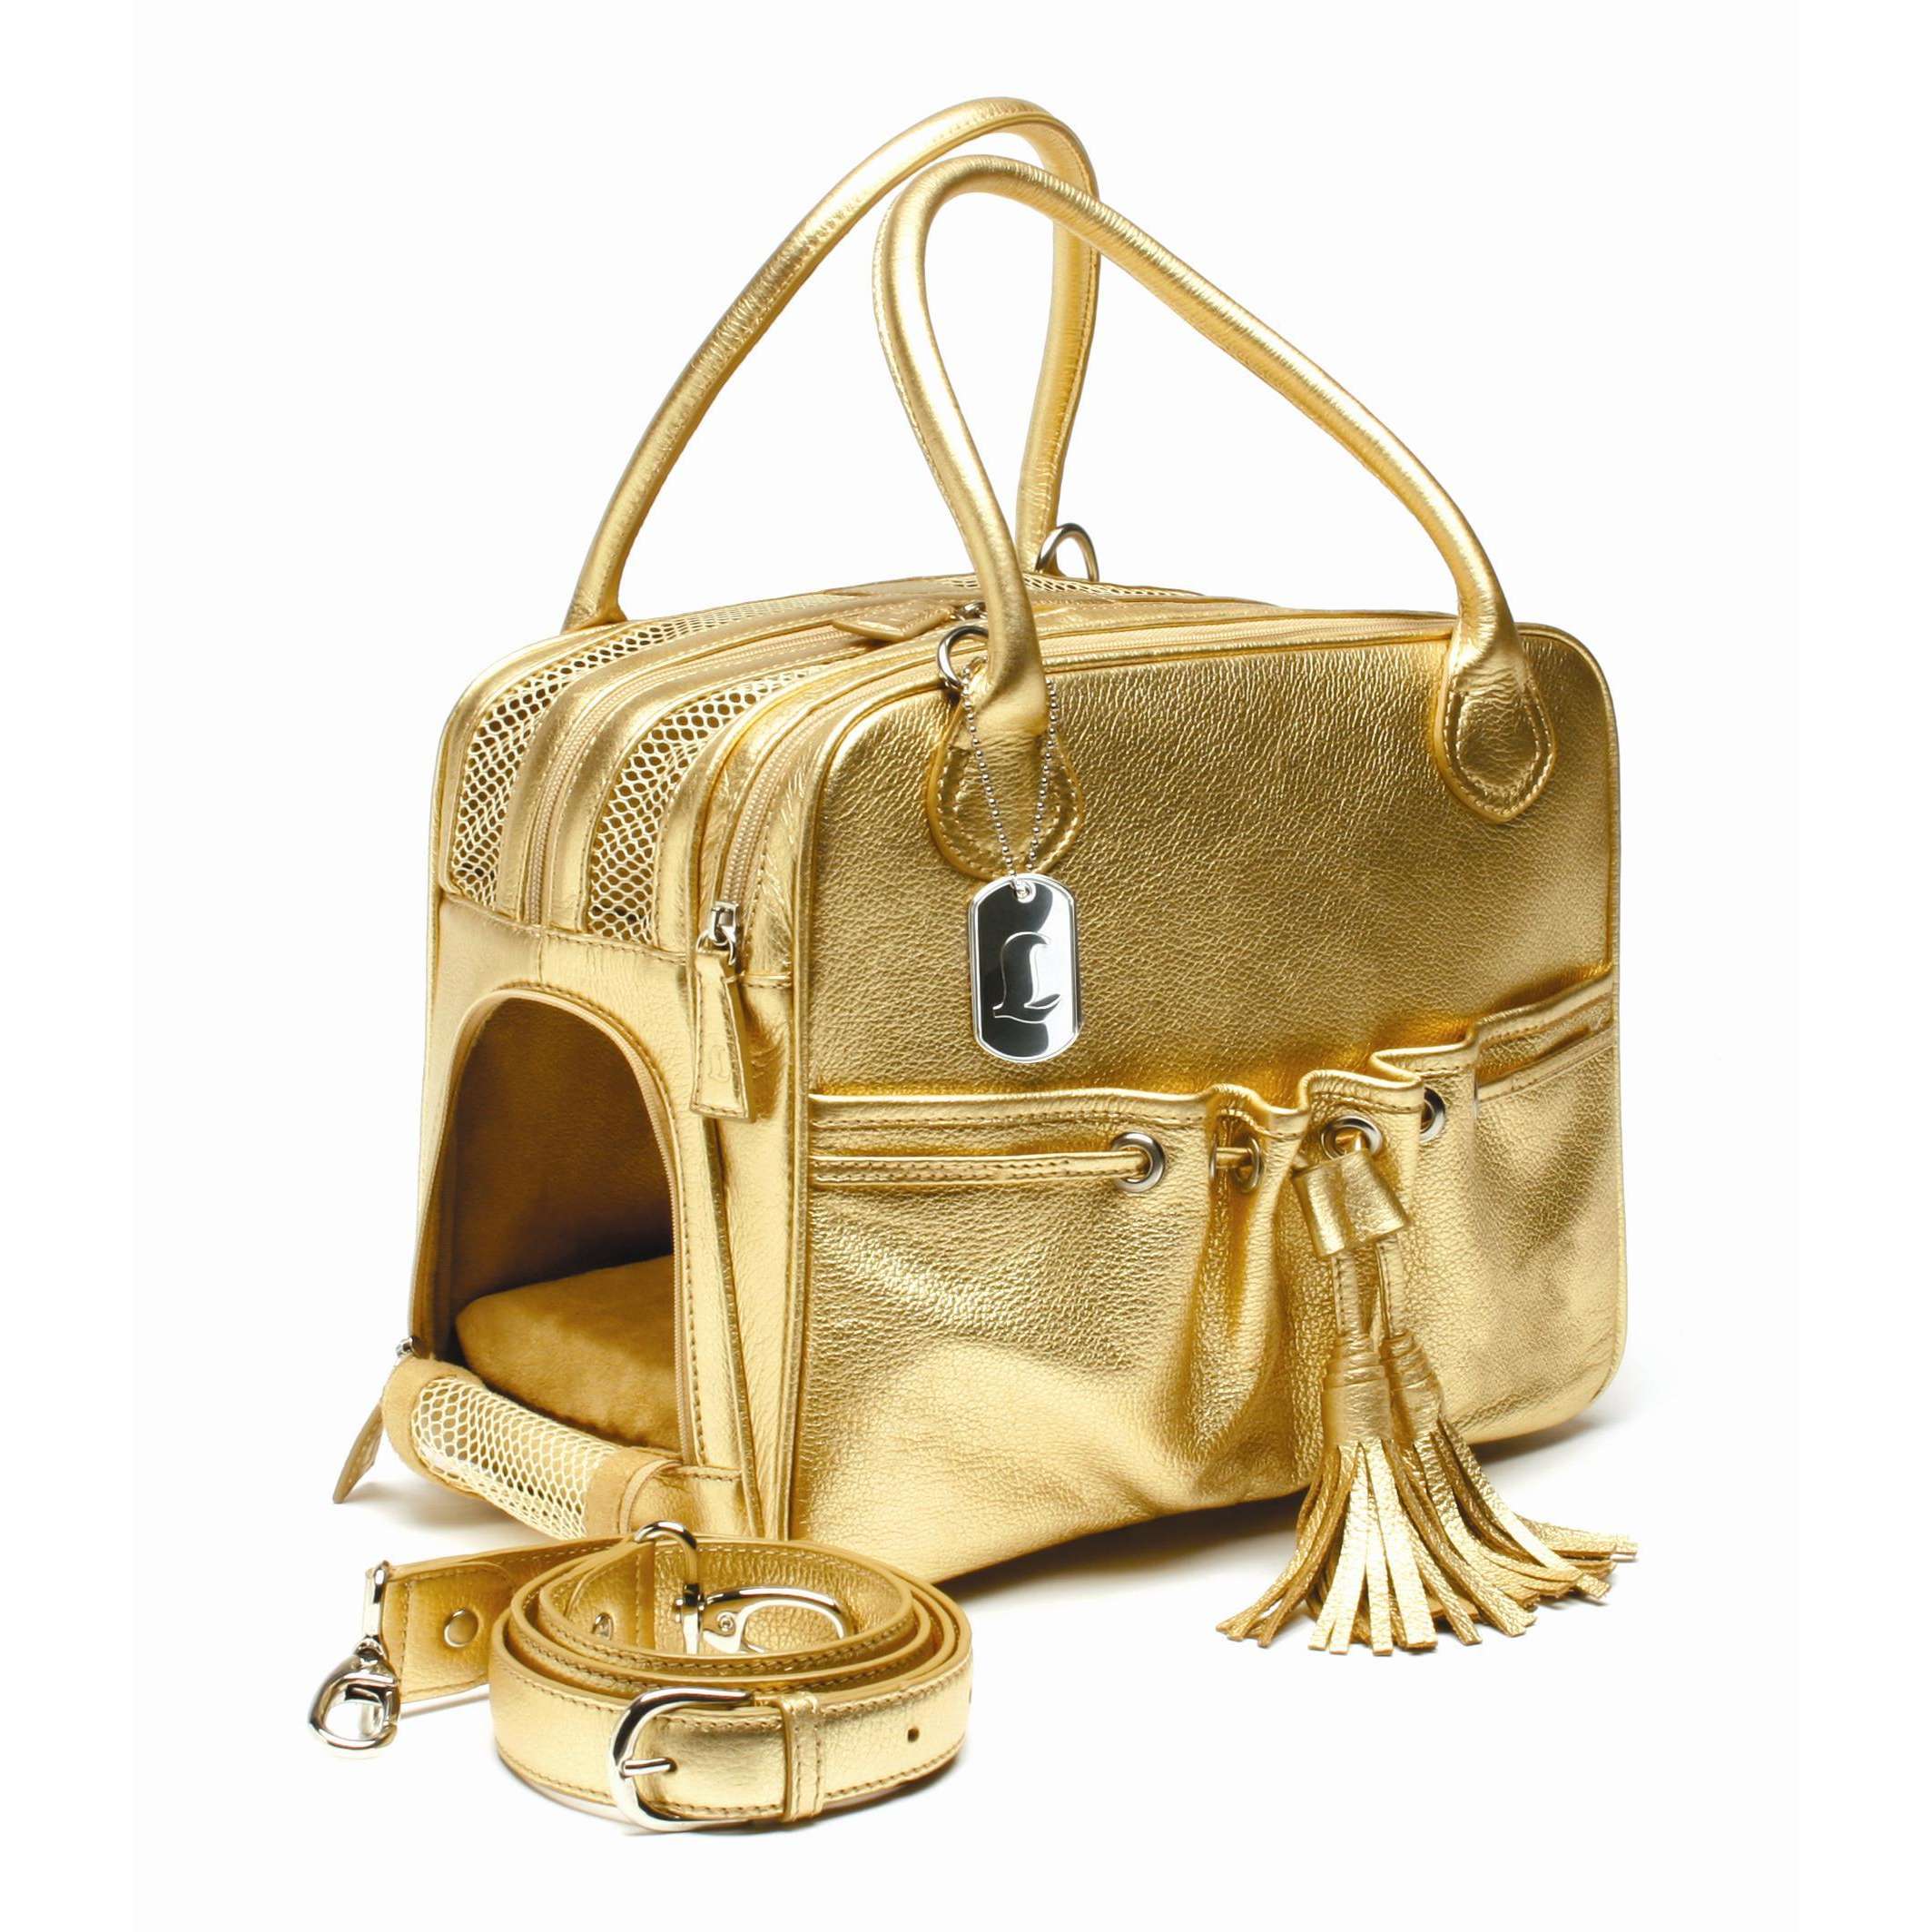 дамская сумочка из золота